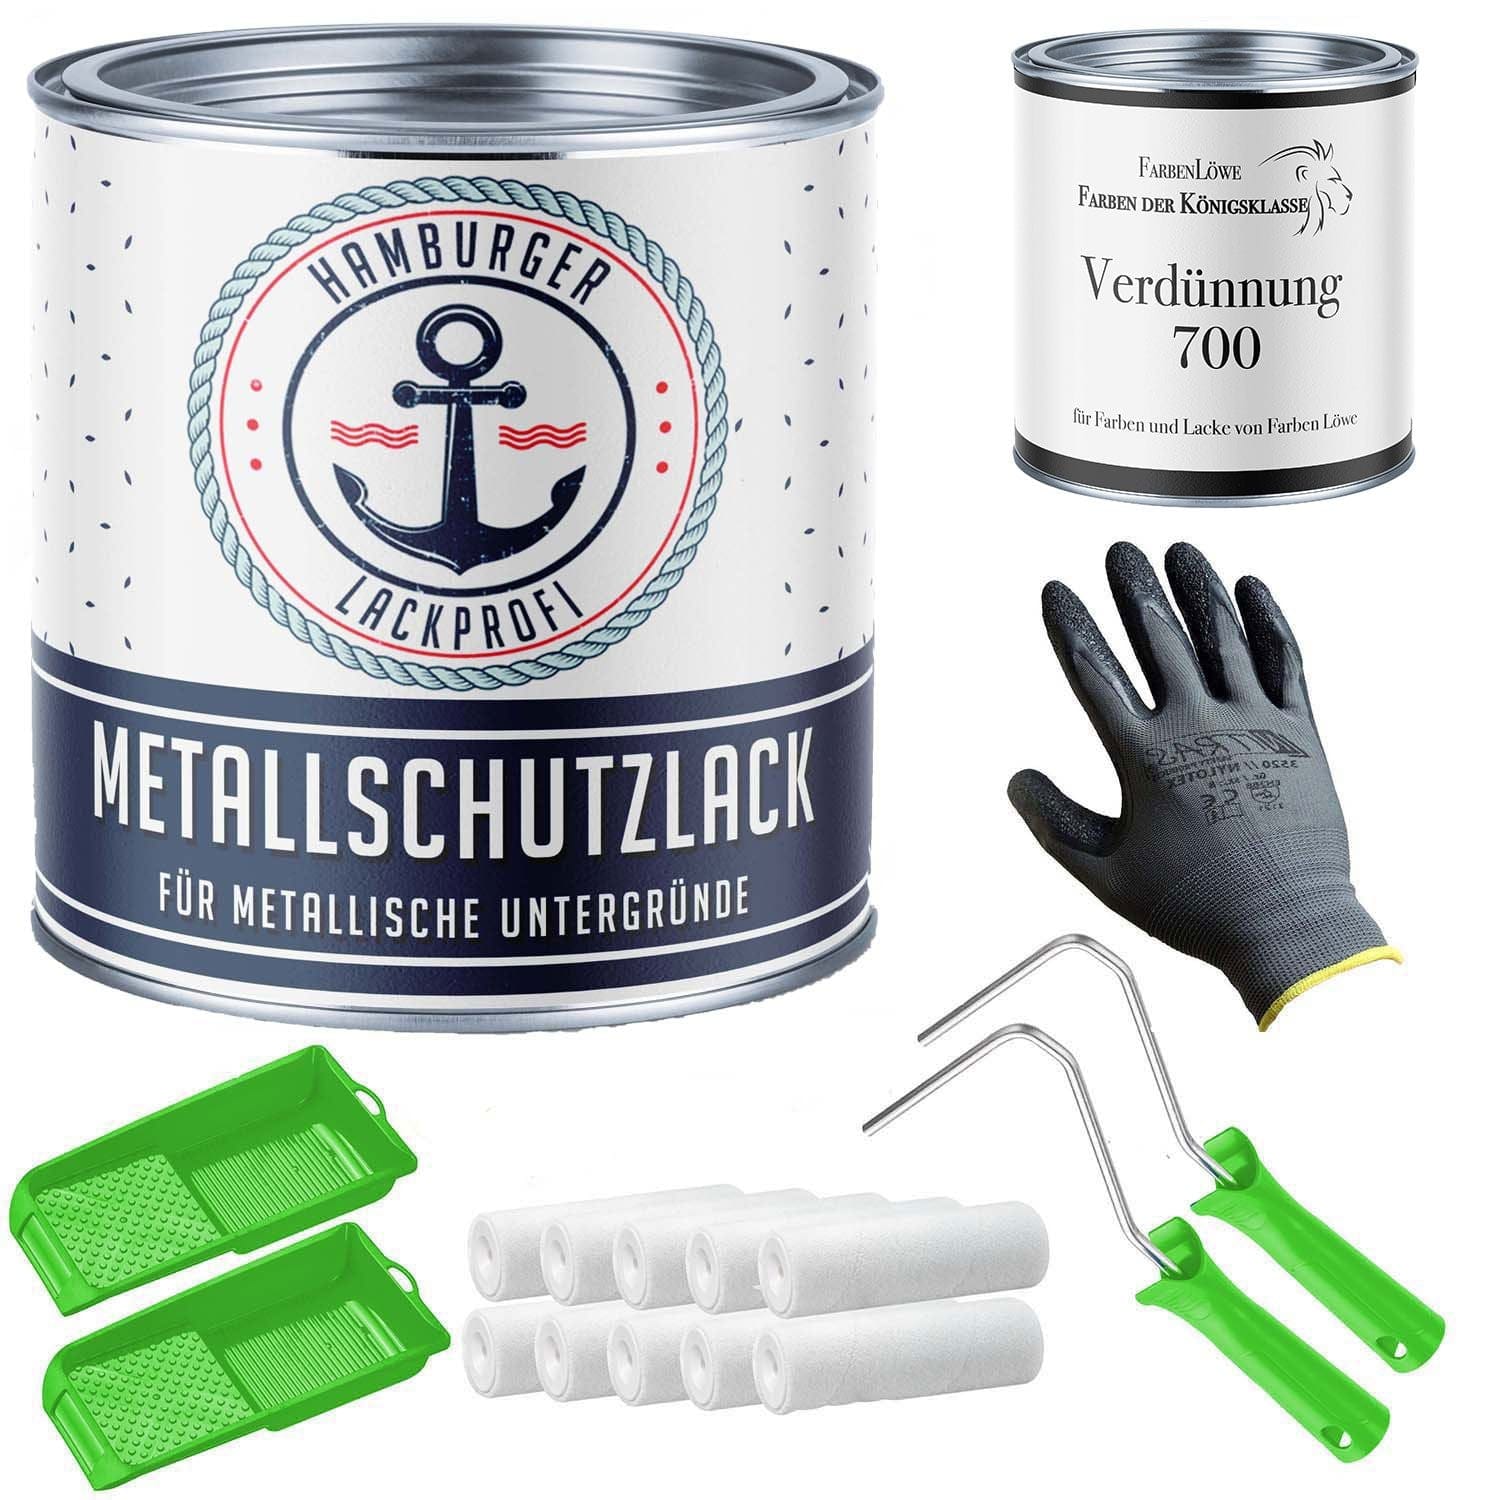 FARBENLÖWE Lacke & Beschichtungen Hamburger Lack-Profi Metallschutzlack in Sonnengelb RAL 1037 mit Lackierset (X300) & Verdünnung (1 L) - 30% Sparangebot